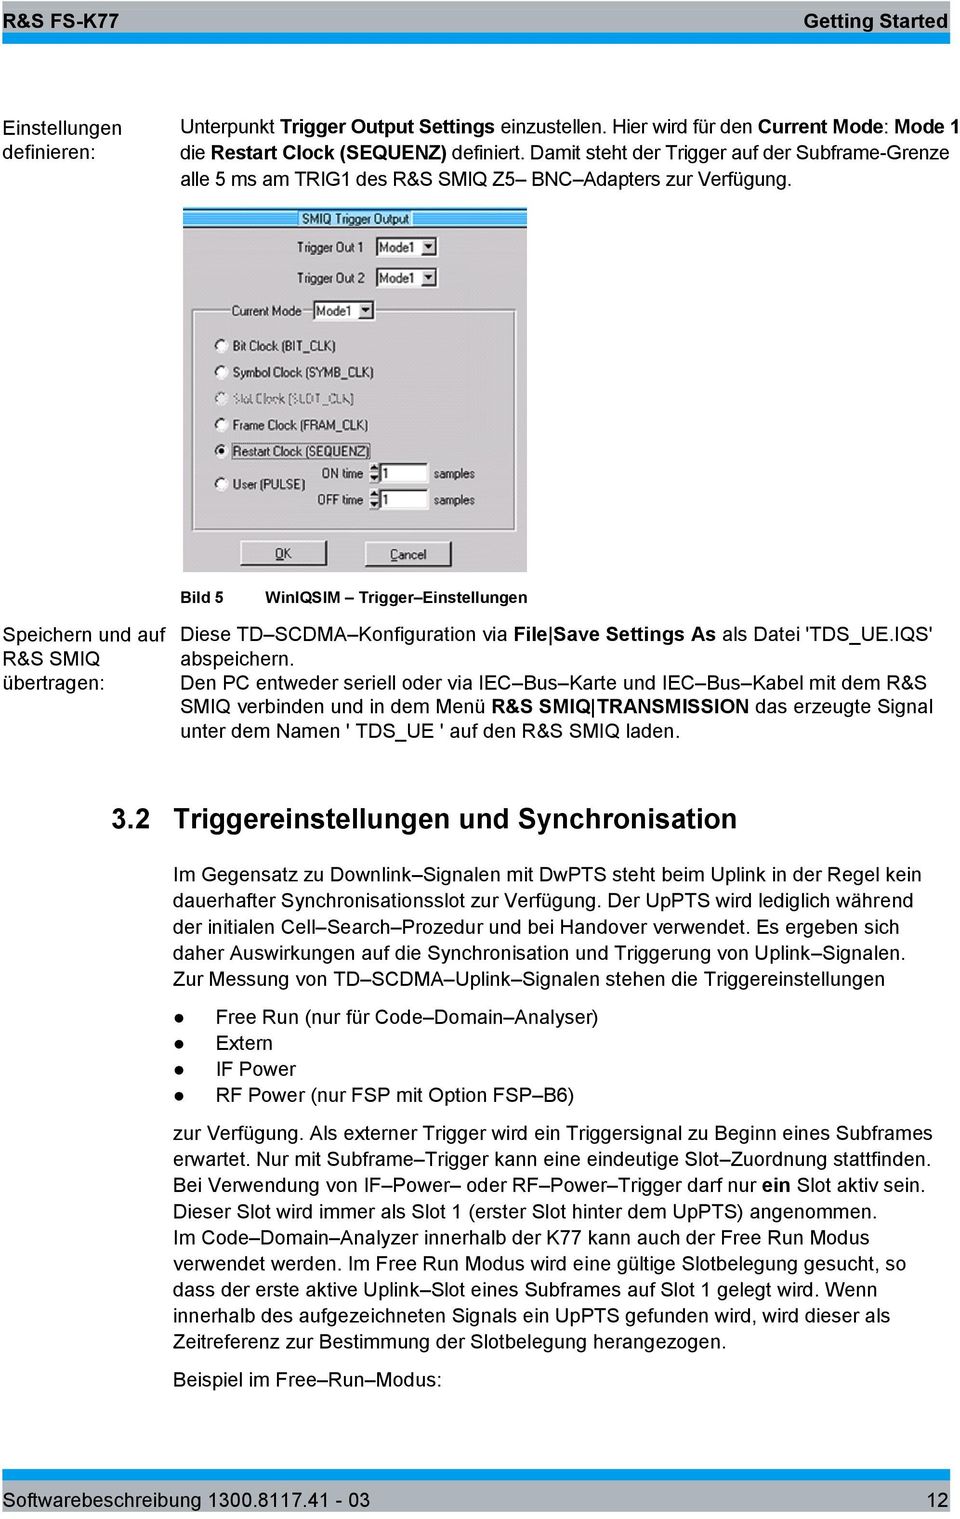 Bild 5 WinIQSIM Trigger Einstellungen Speichern und auf R&S SMIQ übertragen: Diese TD SCDMA Konfiguration via File Save Settings As als Datei 'TDS_UE.IQS' abspeichern.